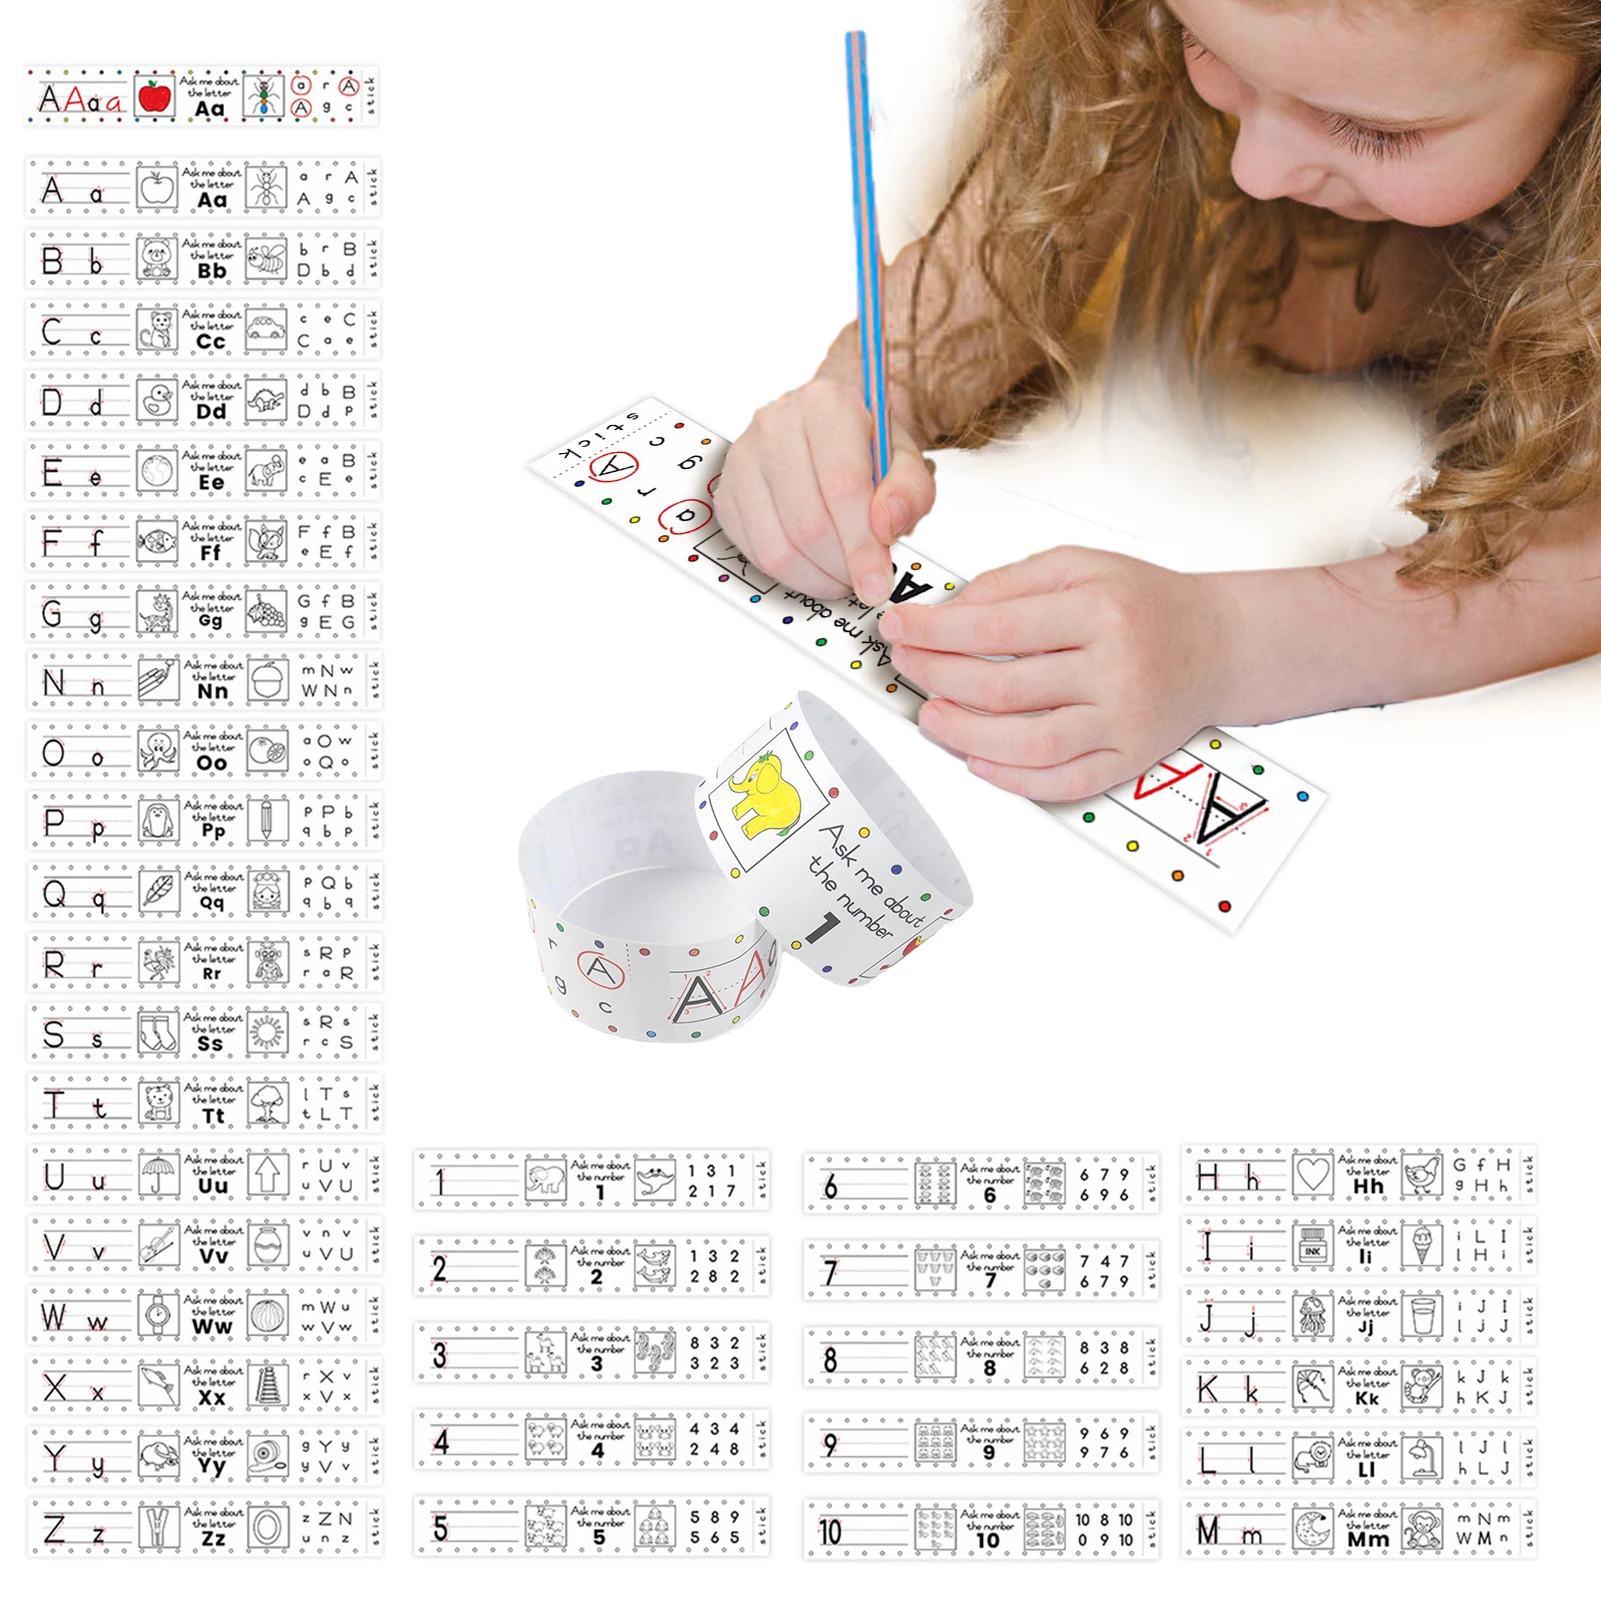 

Бумажные браслеты для изучения букв и рисования, цветные бумажные браслеты, Обучающие буквы и цифры, Обучающие браслеты